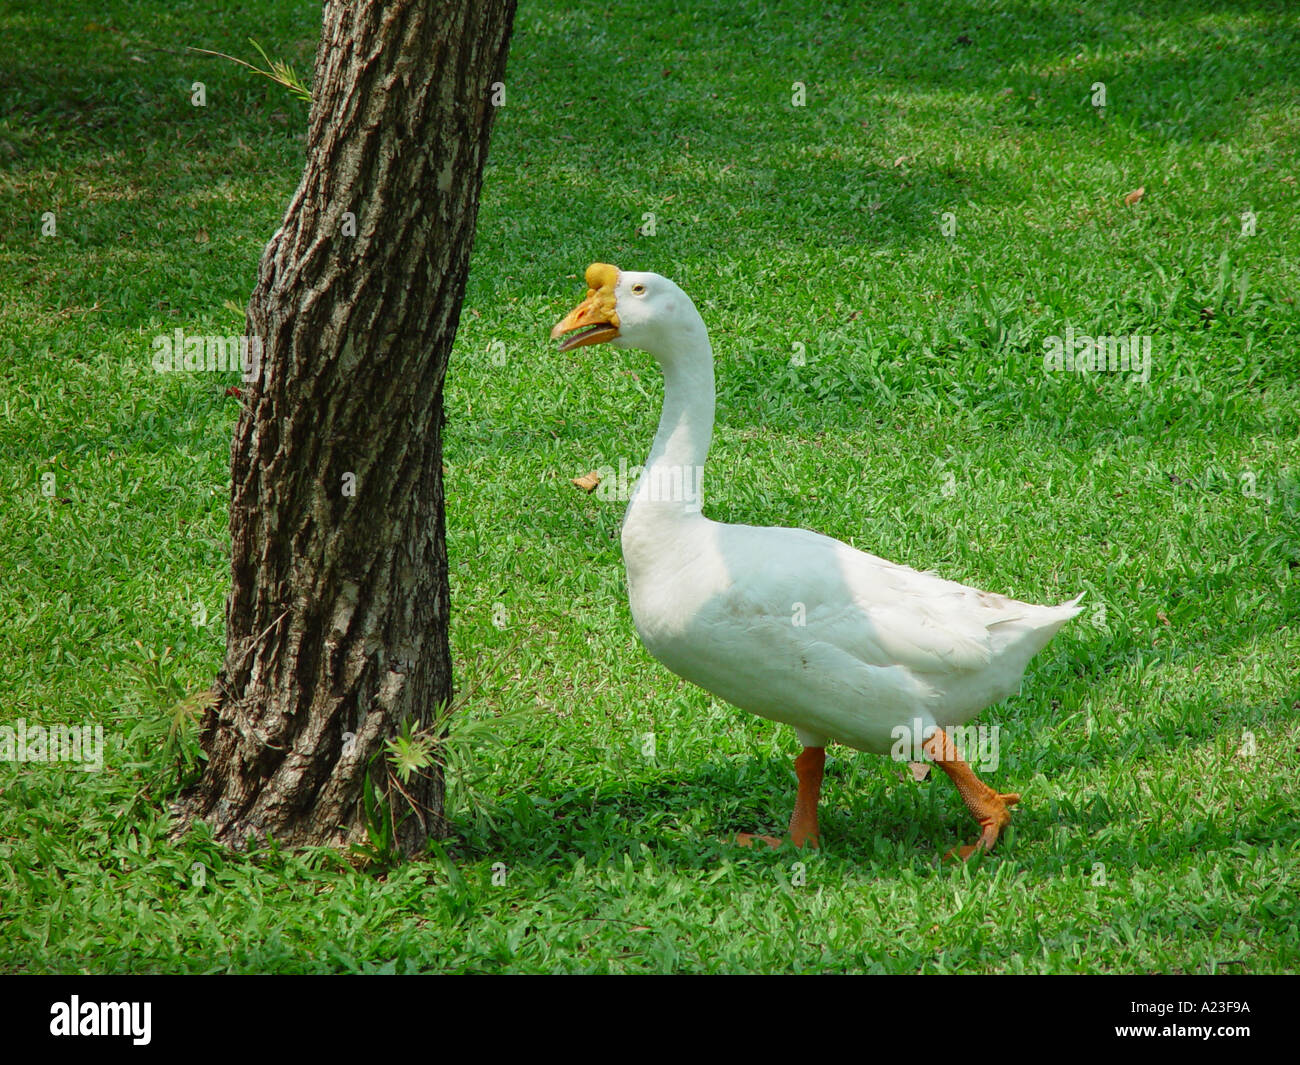 White goose towards tree in Thailand Stock Photo